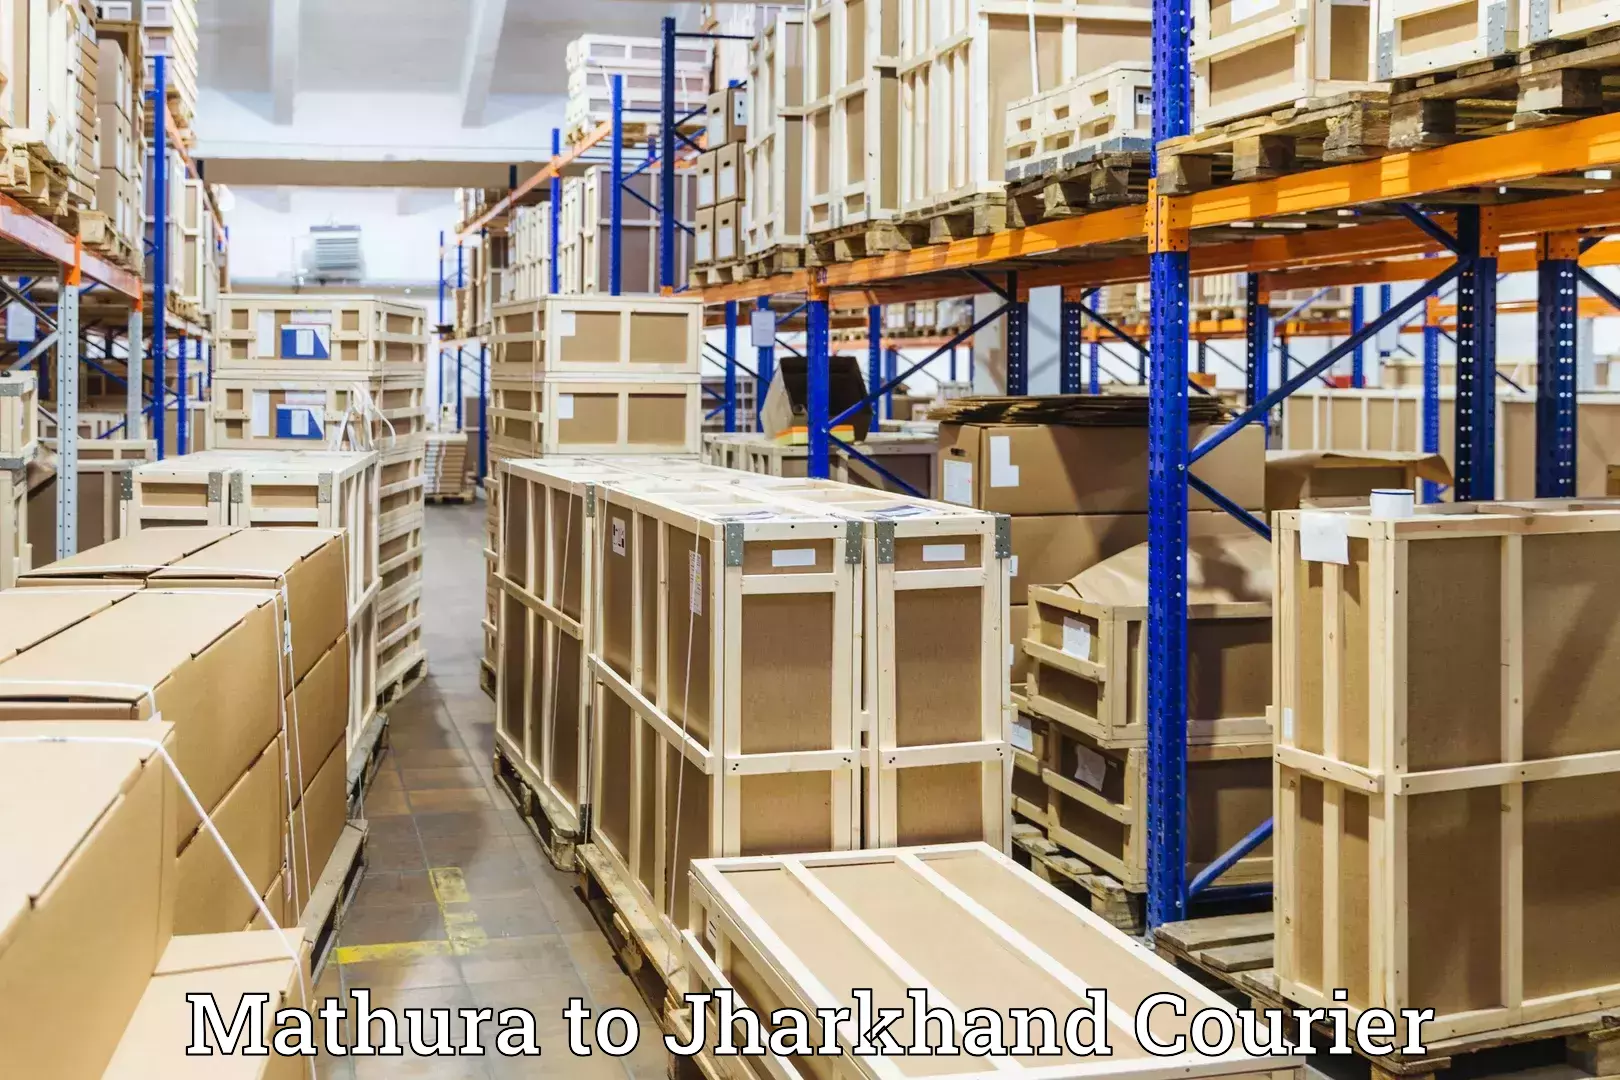 Luggage shipping specialists Mathura to Godabar Chatra